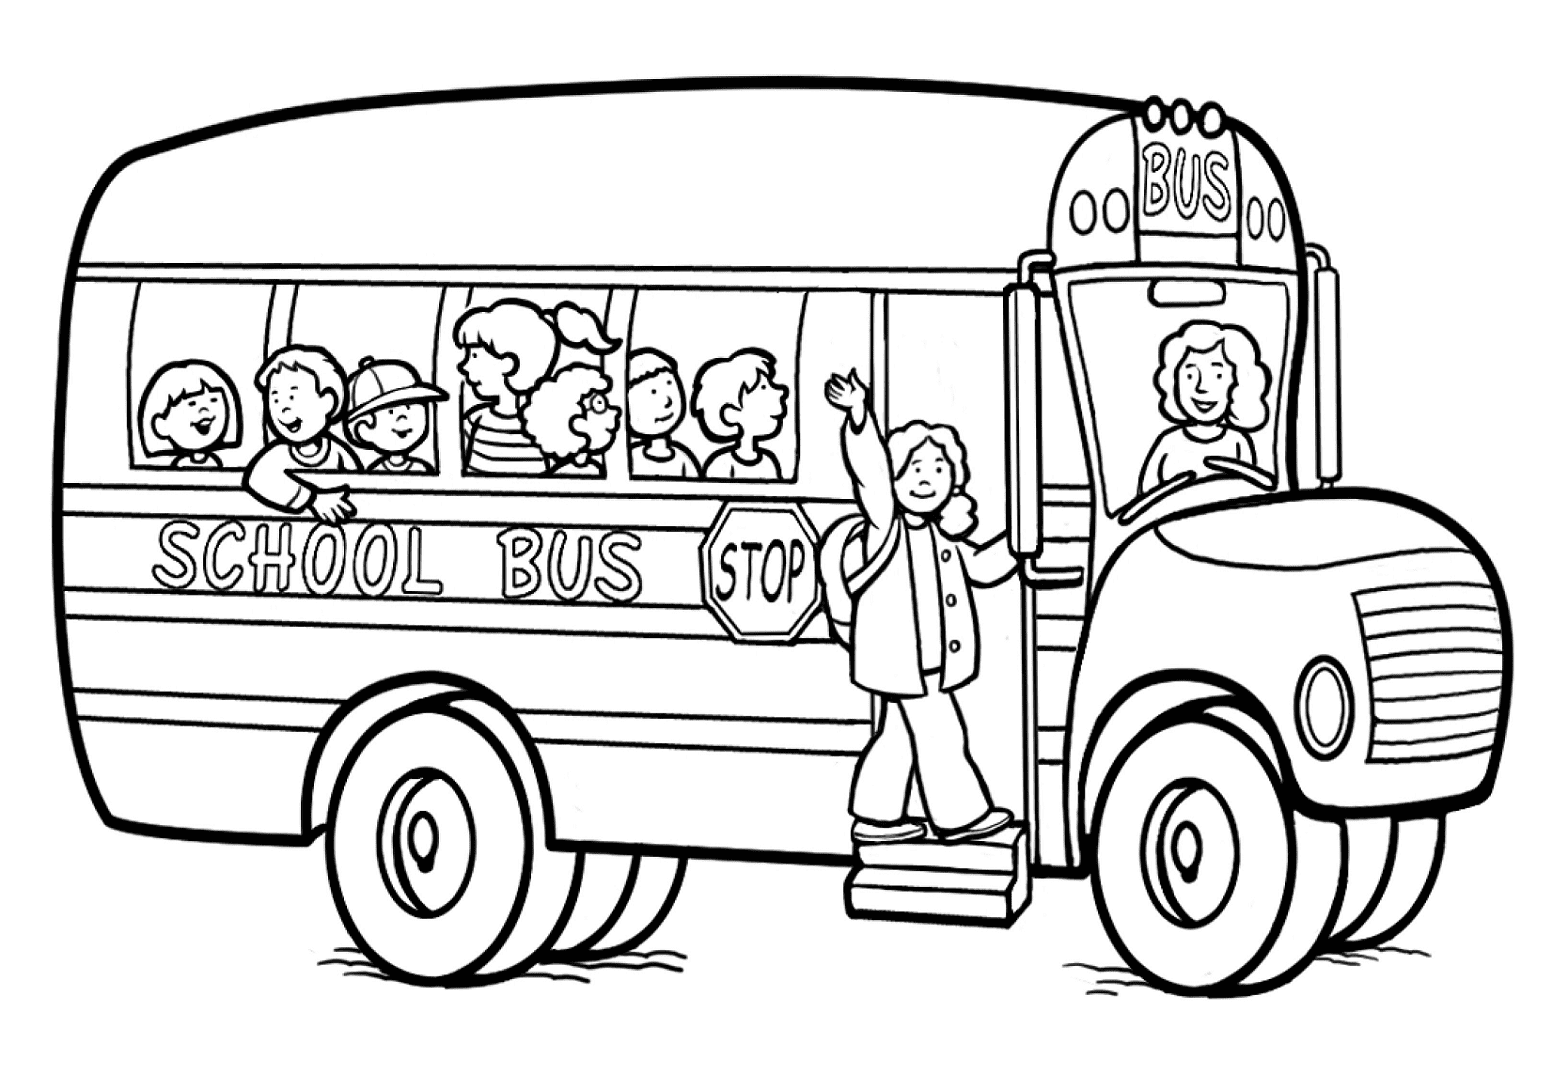 Imagem do ônibus escolar do ônibus escolar